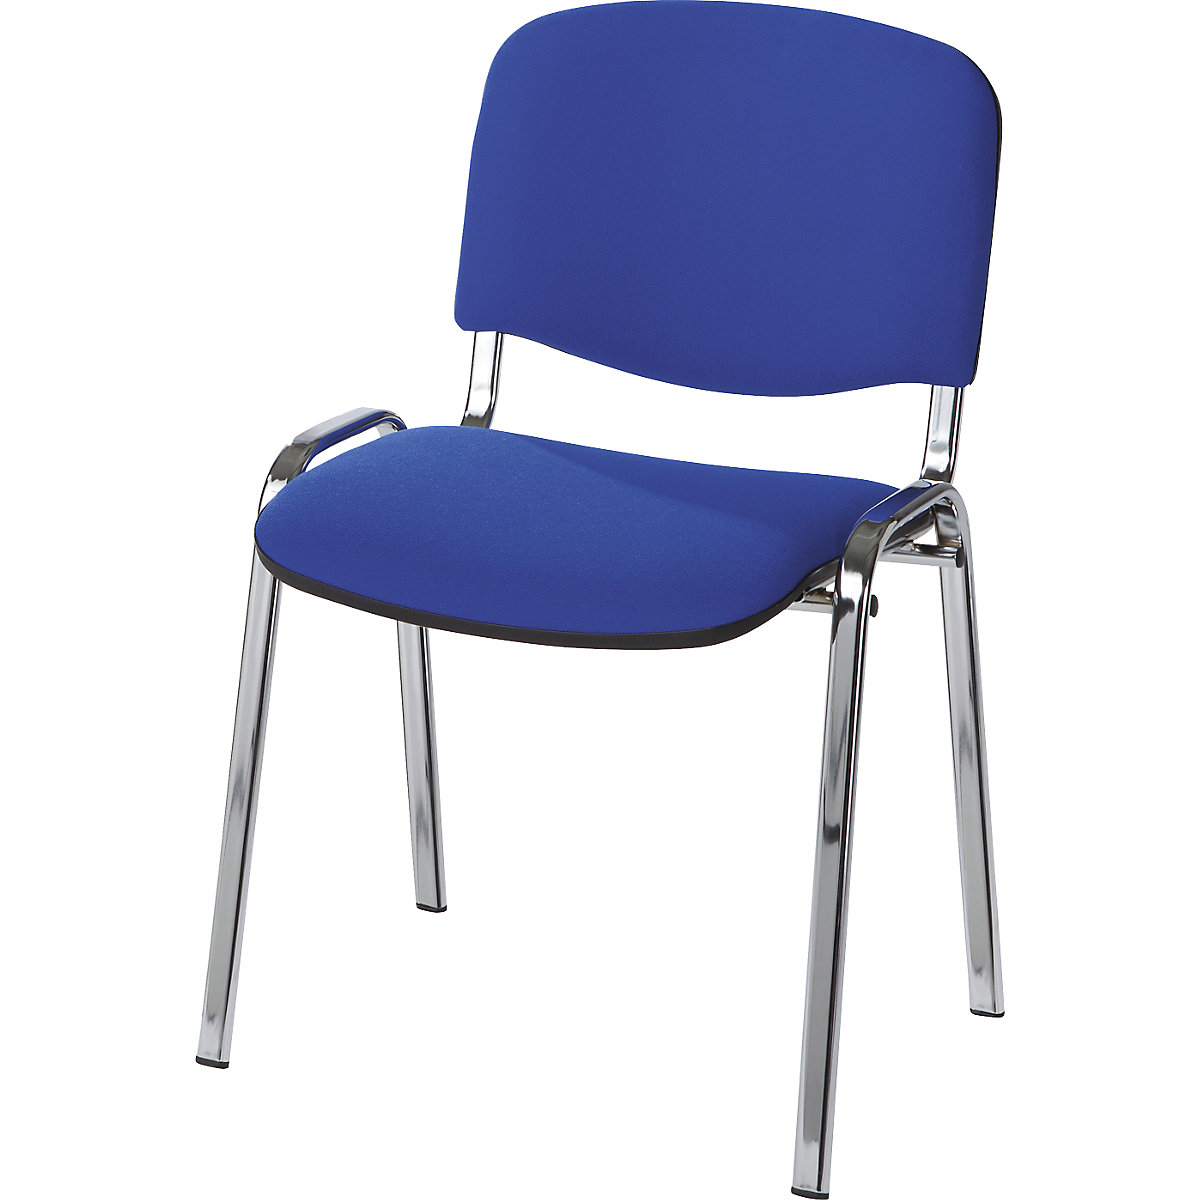 Krzesło dla gości, ustawiane w stos, oparcie z obiciem, szkielet chromowany, obicie niebieskie, opak. 2 szt.-7